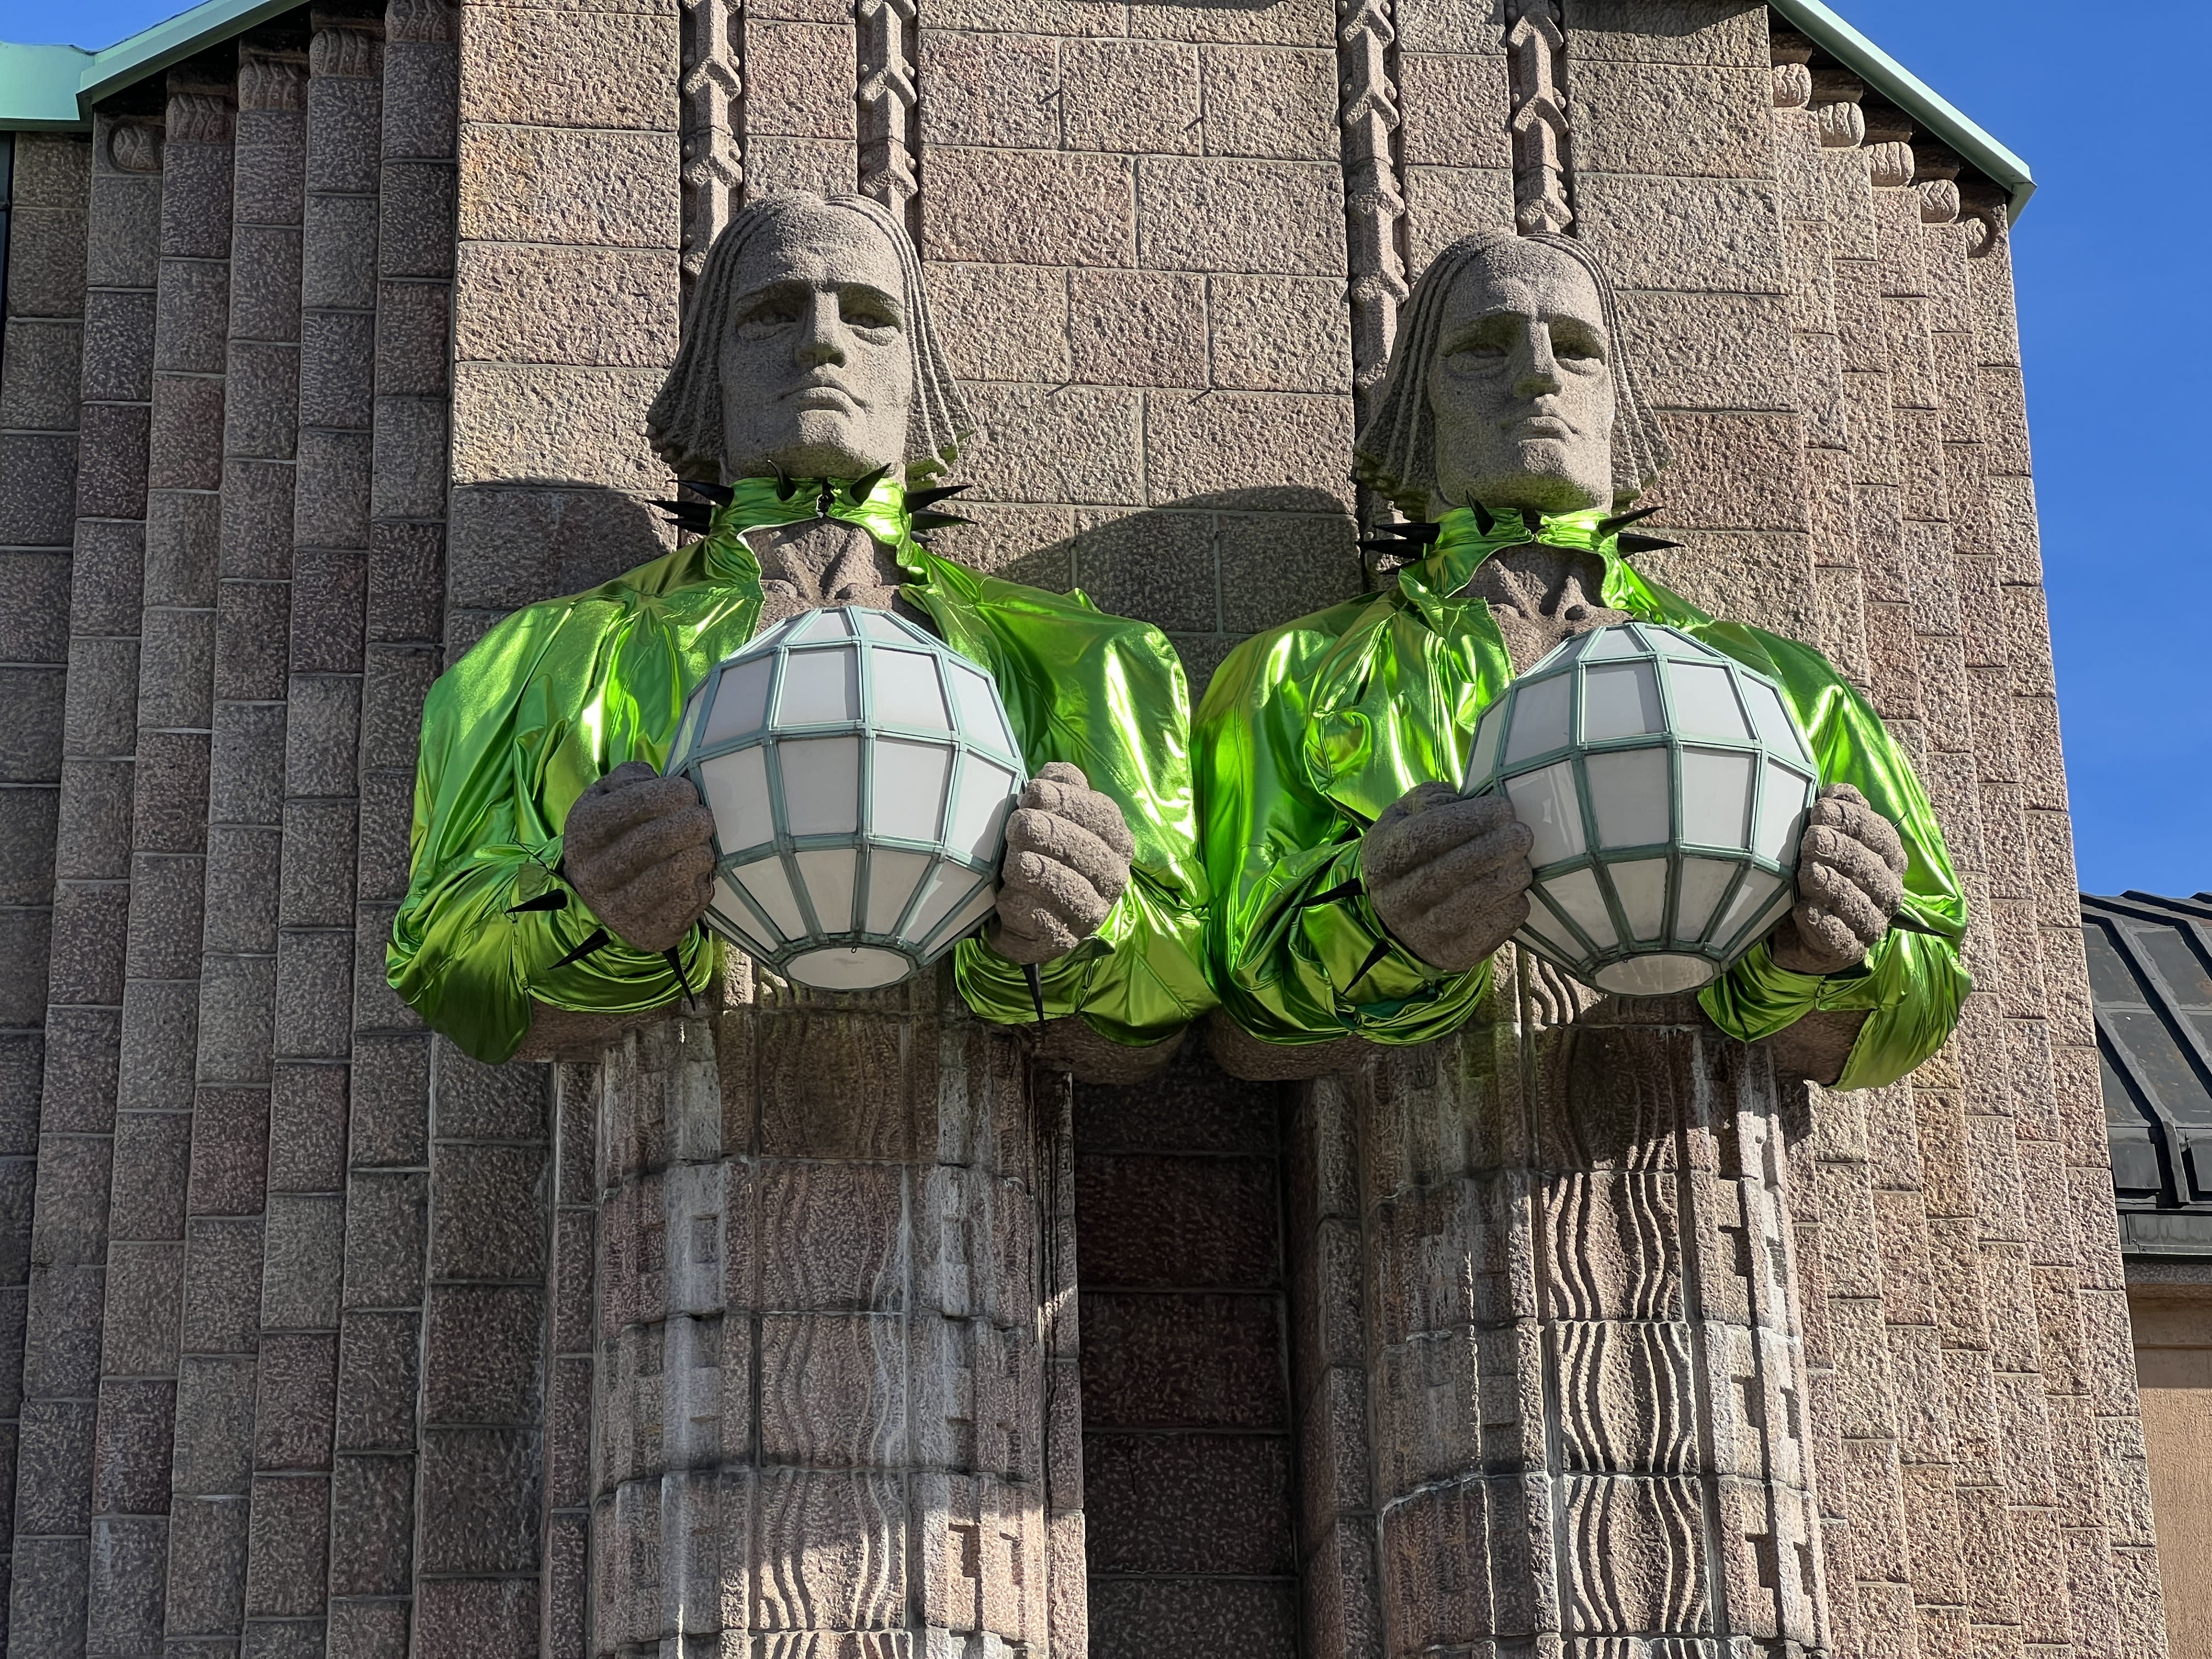 Iconic Helsinki statues Käärijä in boleros as Eurovision fever takes over Finland